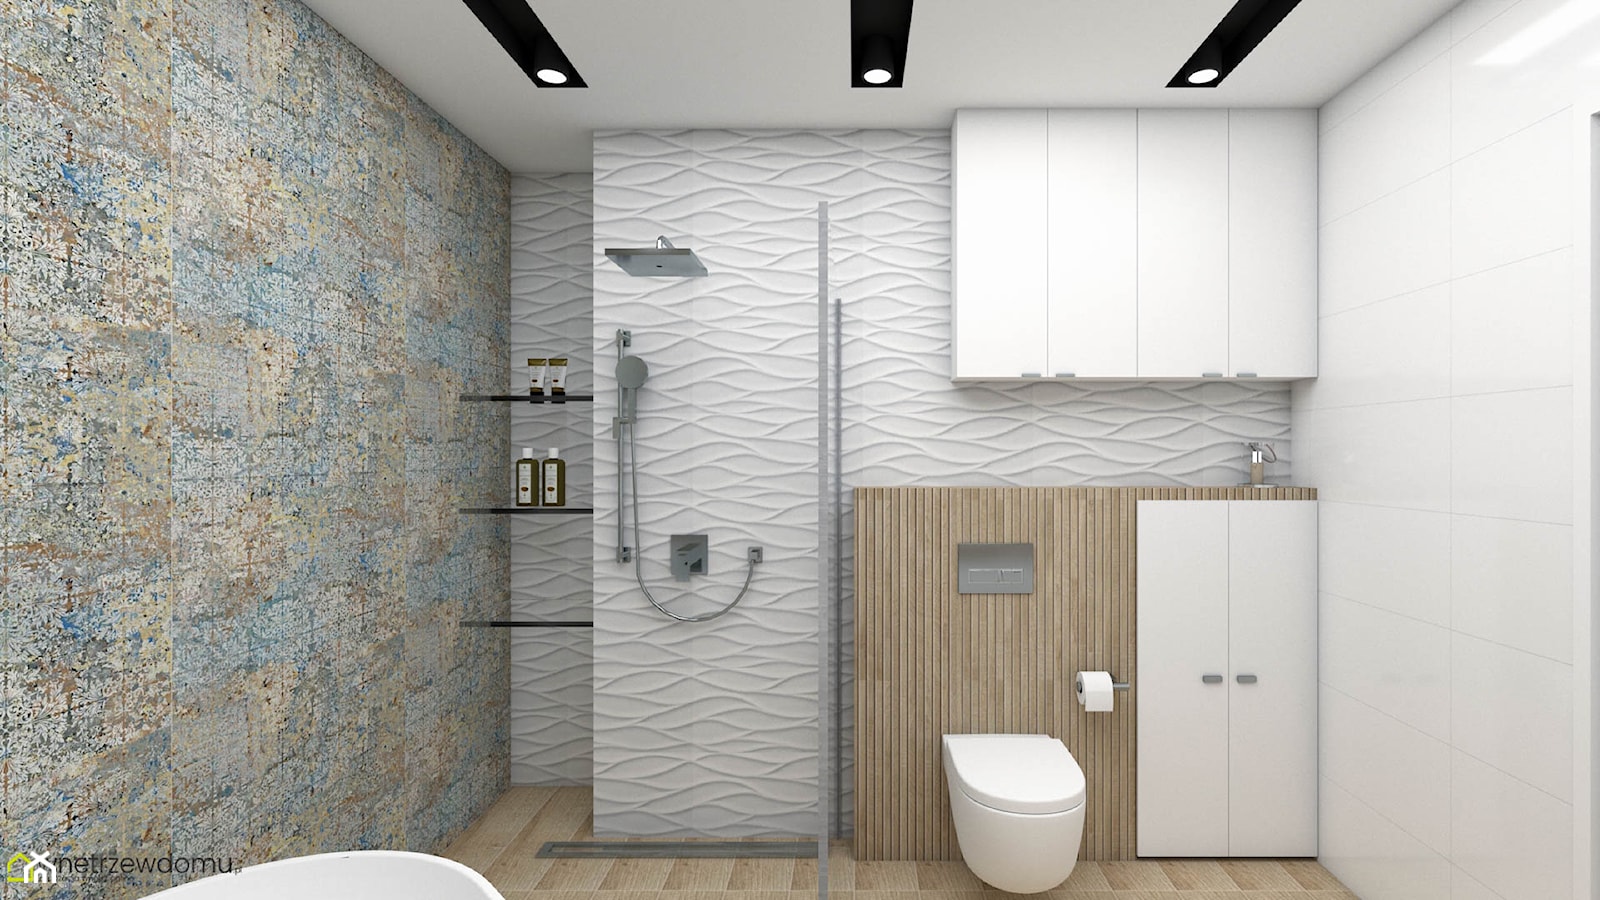 Jasna łazienka z wanną wolnostojącą i prysznicem - zdjęcie od wnetrzewdomu - Homebook